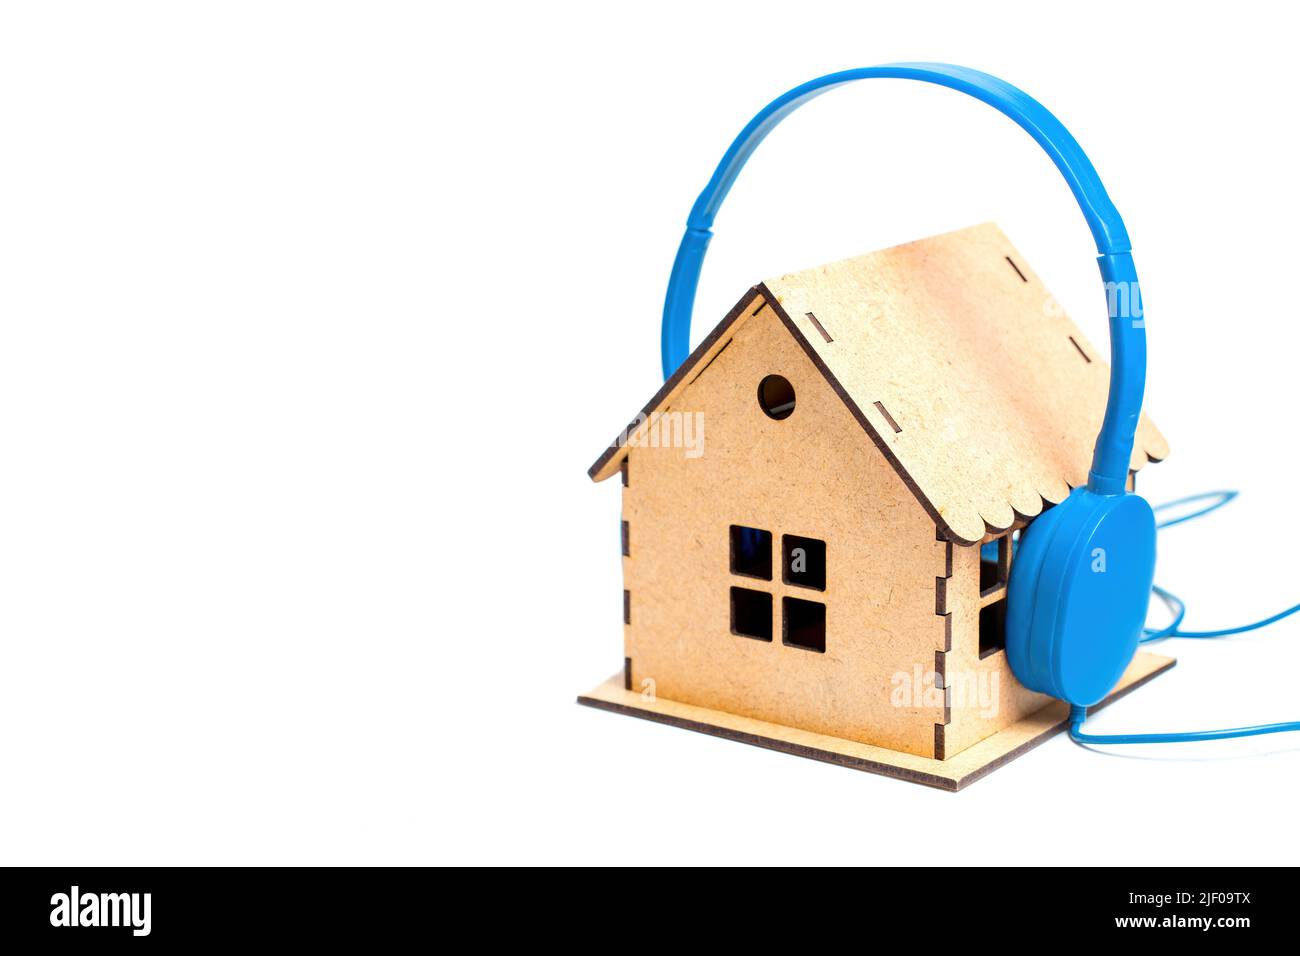 Casque bleu mis sur un modèle de maison en bois miniature isolé sur fond blanc. Concept de bruit domestique et d'isolation acoustique. Banque D'Images